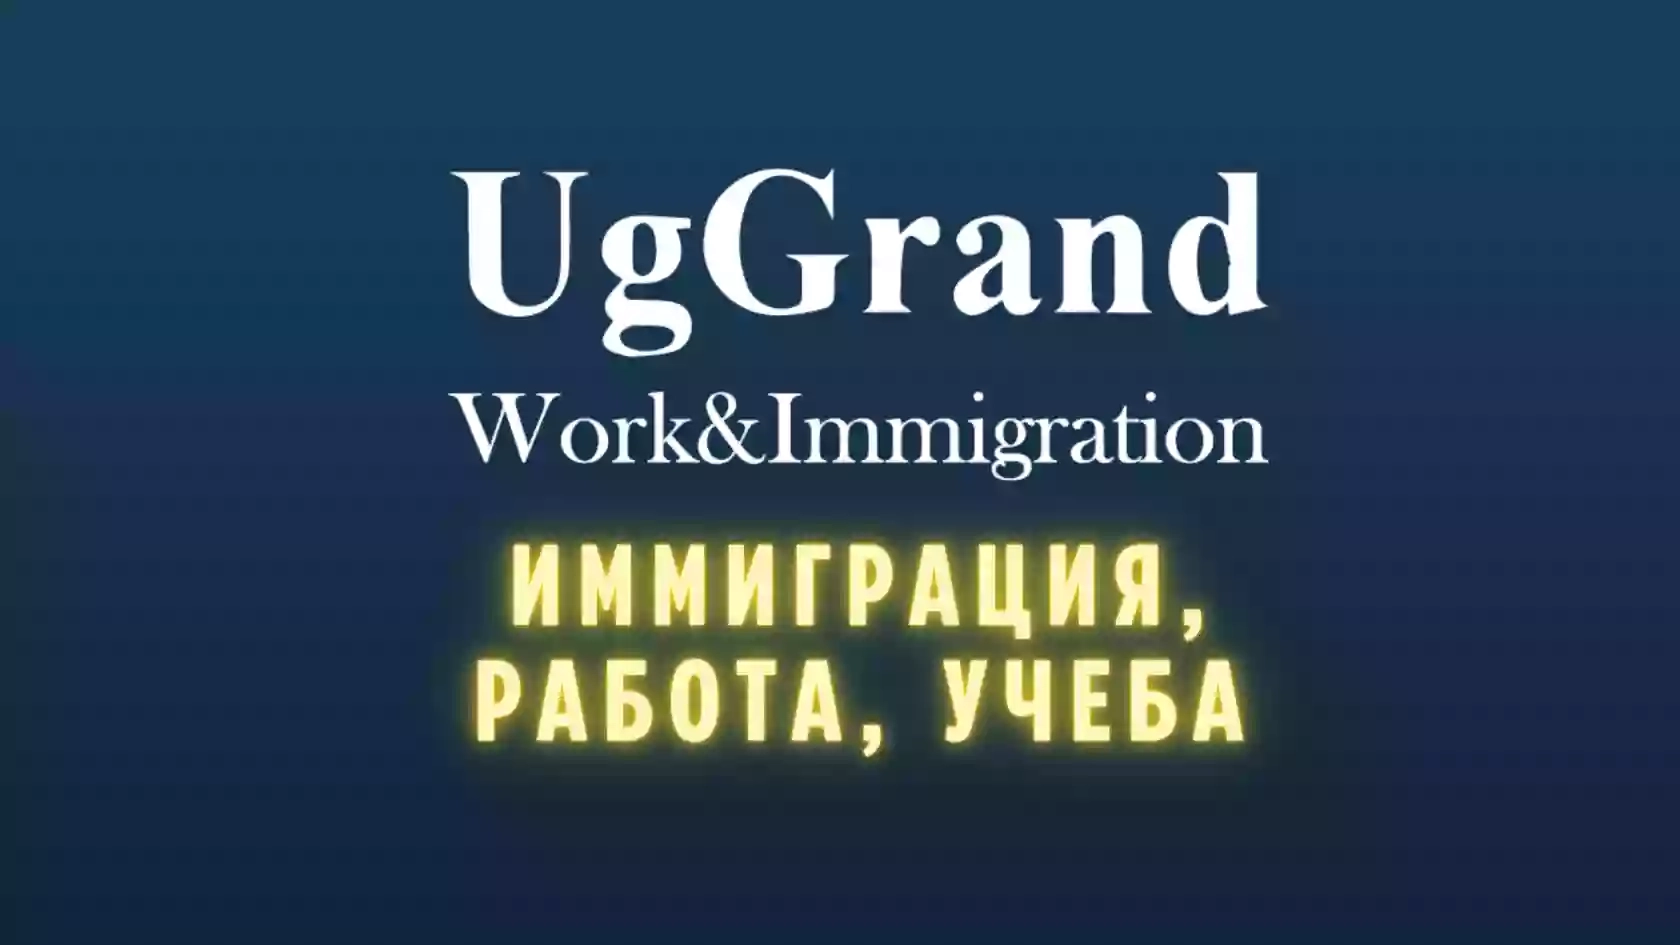 Ug Grand Work&Immigration